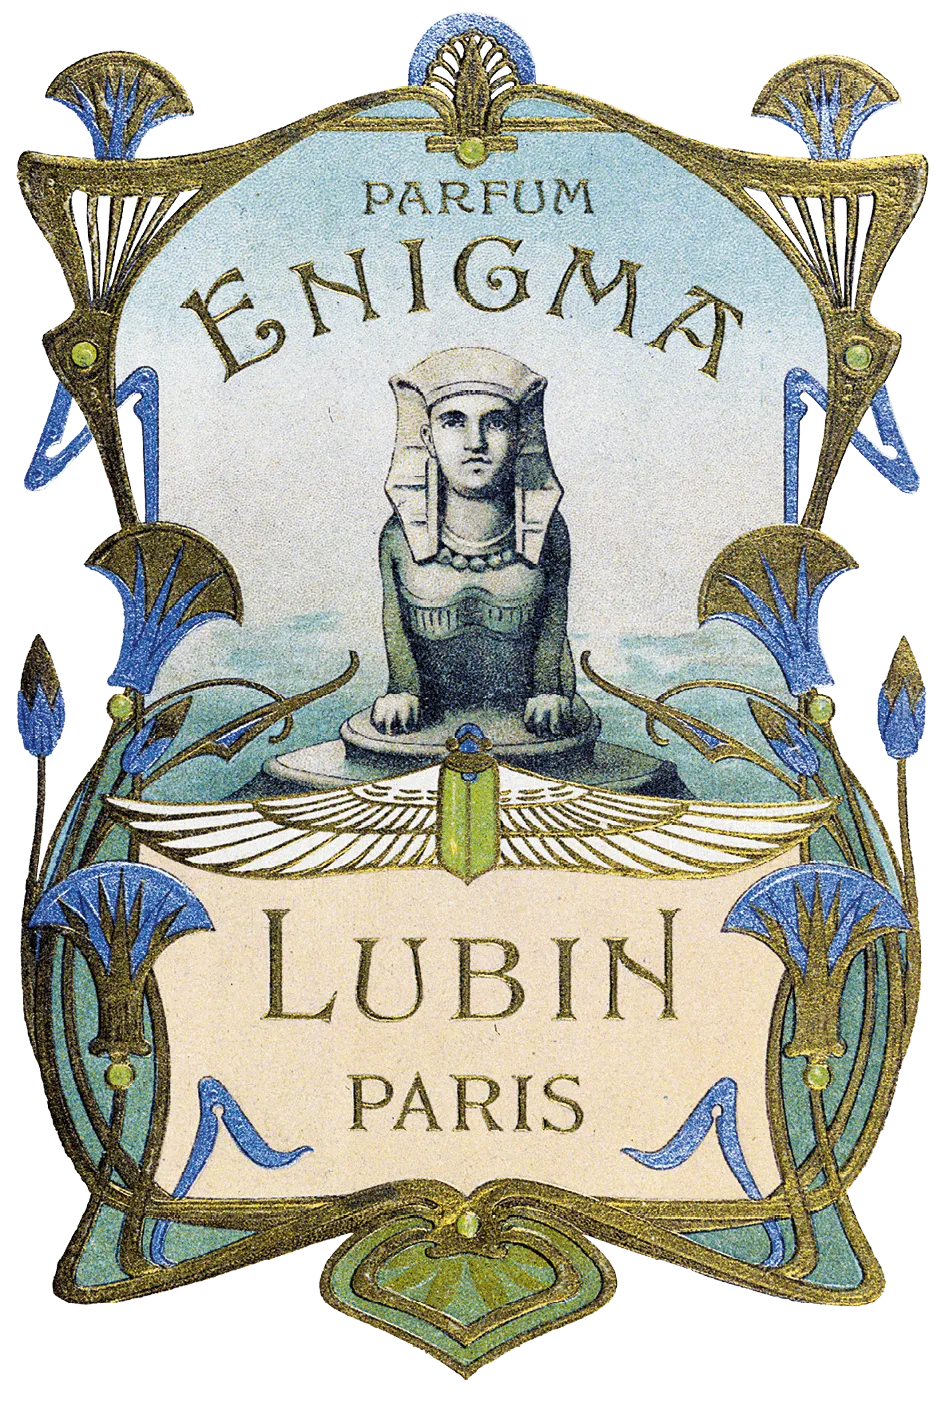 Publicité pour le parfum Enigma de Lubin